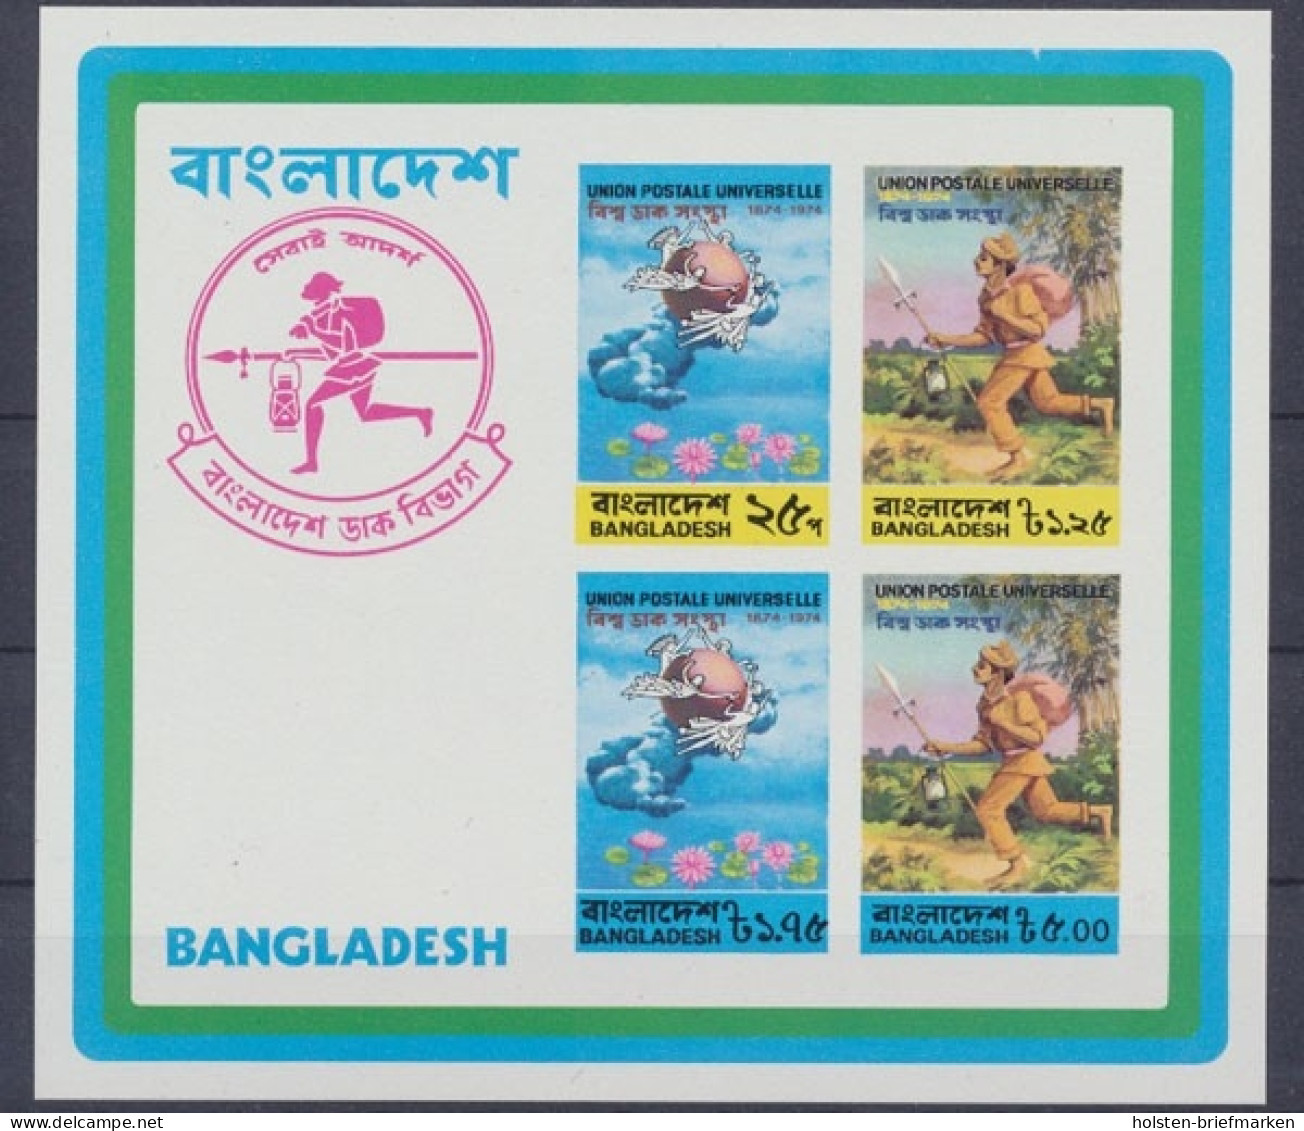 Bangladesch, MiNr. Block 1 B, Postfrisch - Bangladesh